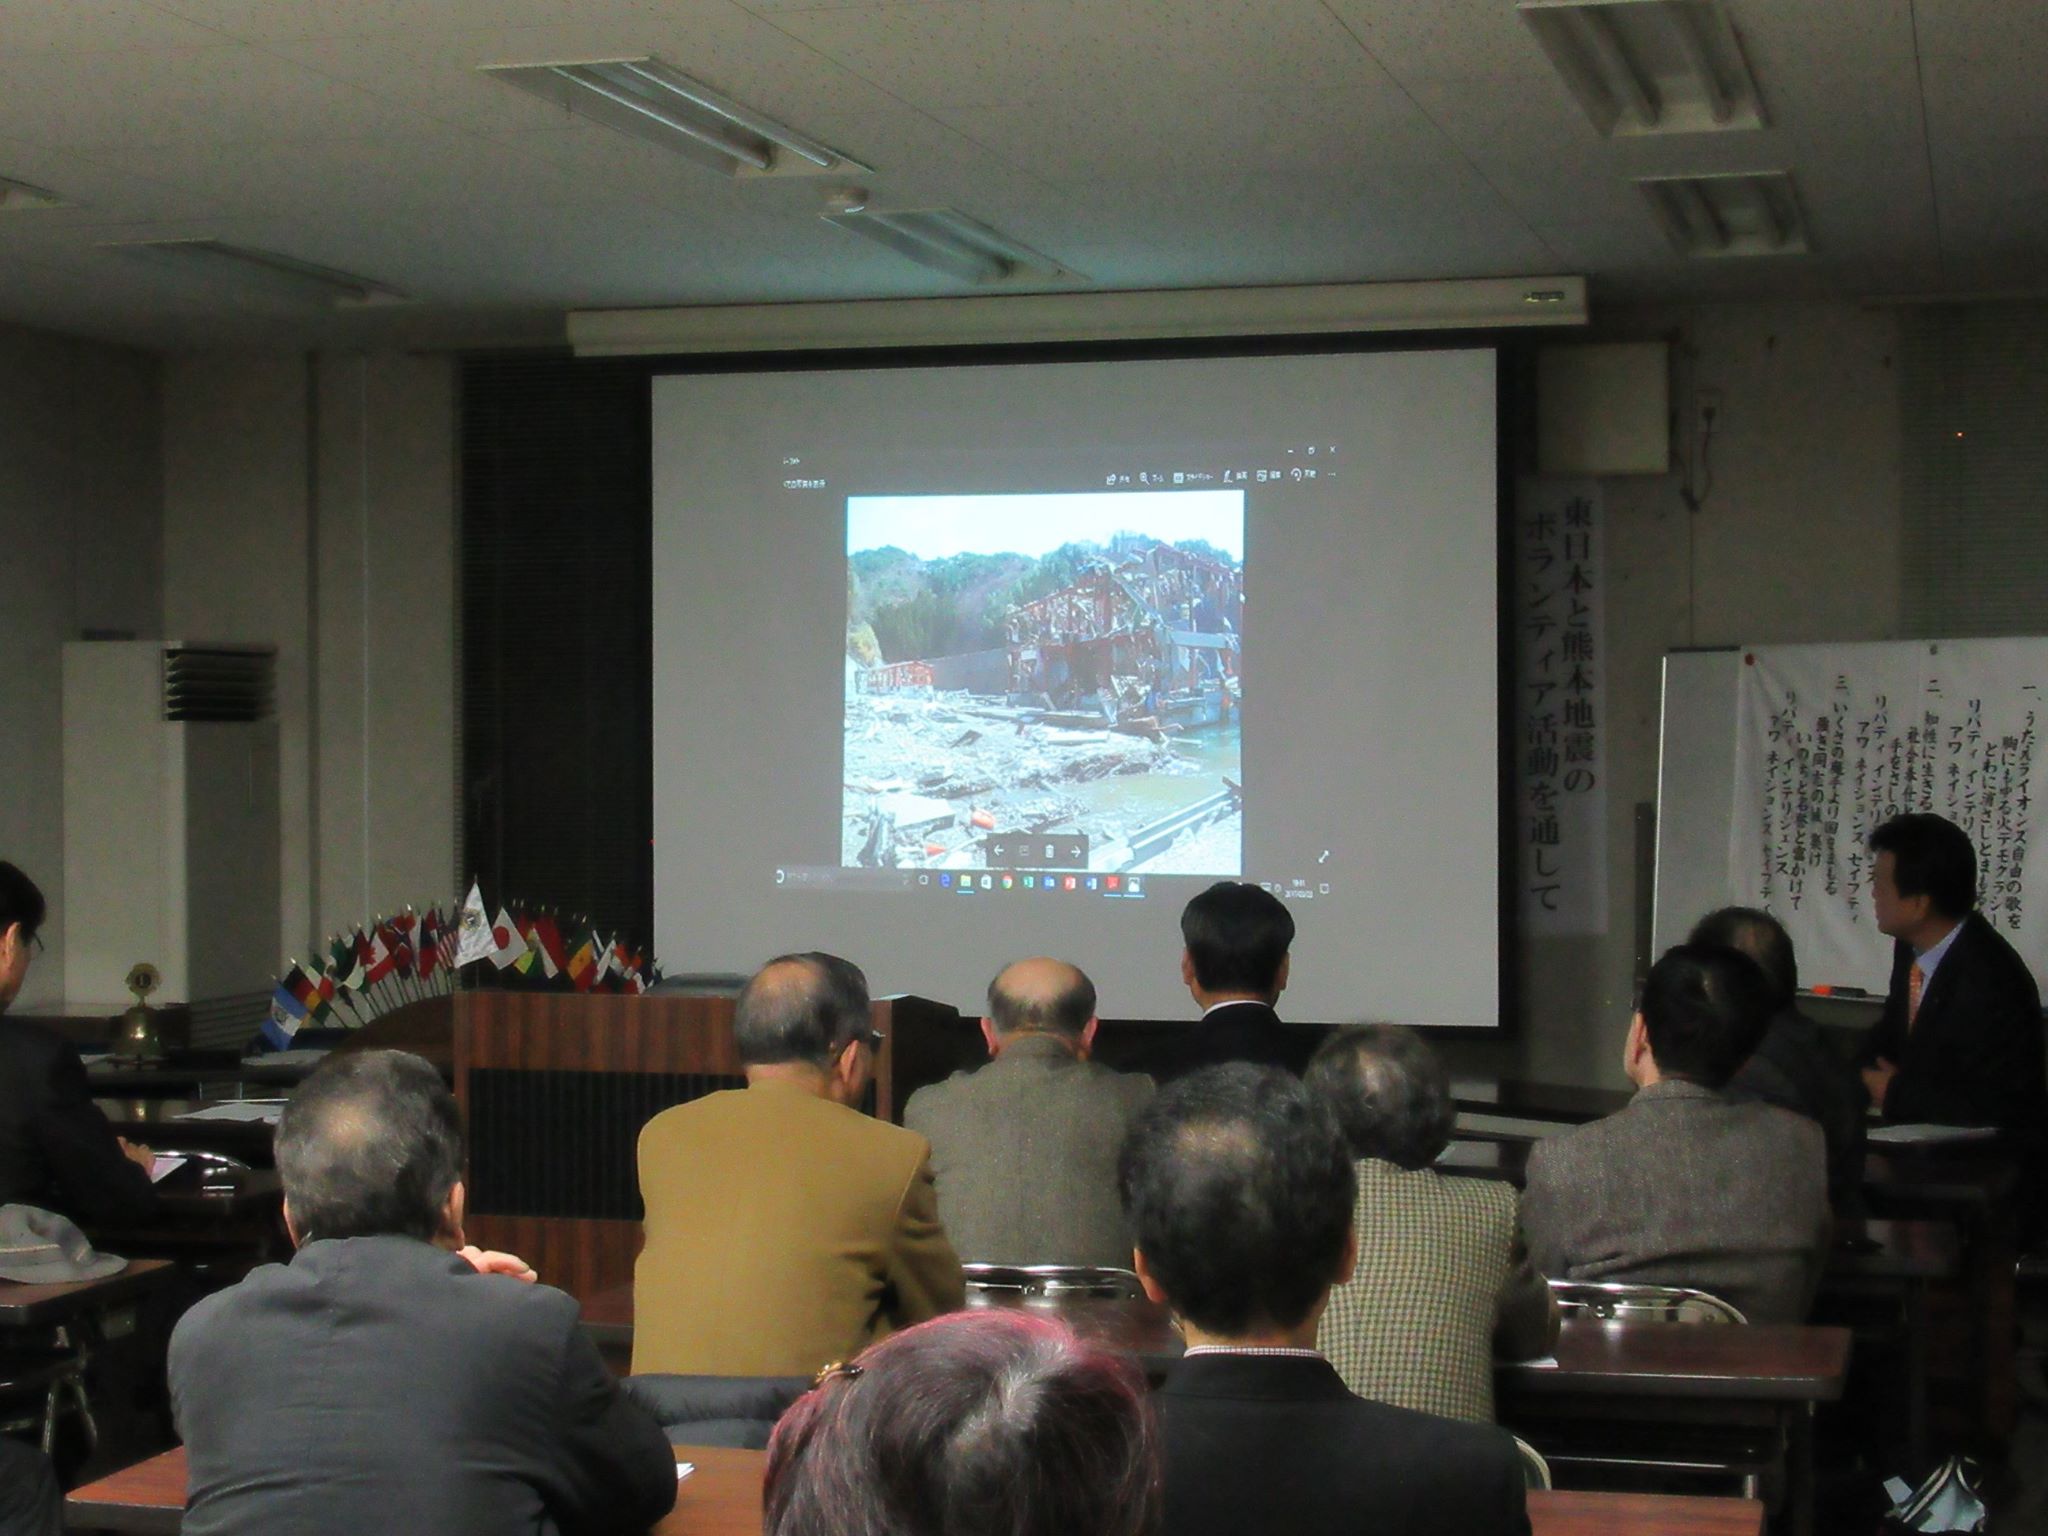 第51期 3月第二例会「東日本と熊本地震のボランティア活動を通して」